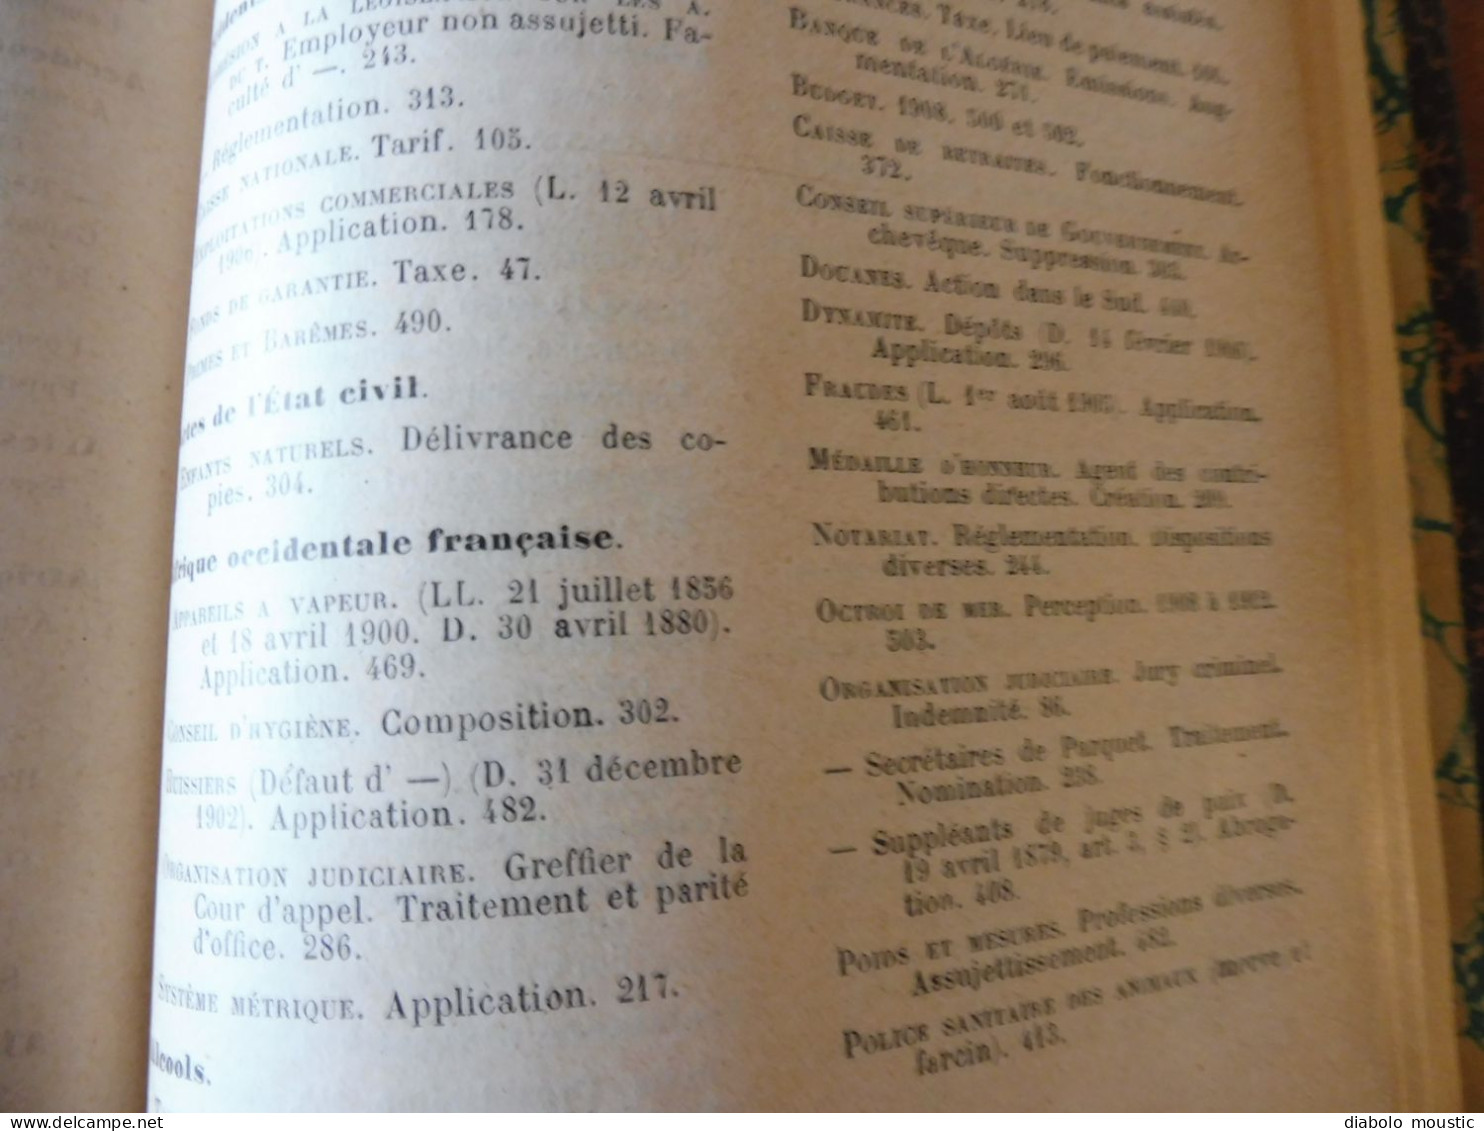 1907  RECUEIL des LOIS : Absinthes, Vers à soie, Séparation des églises et de l'Etat, destruction corbeaux; ; Etc ; Etc